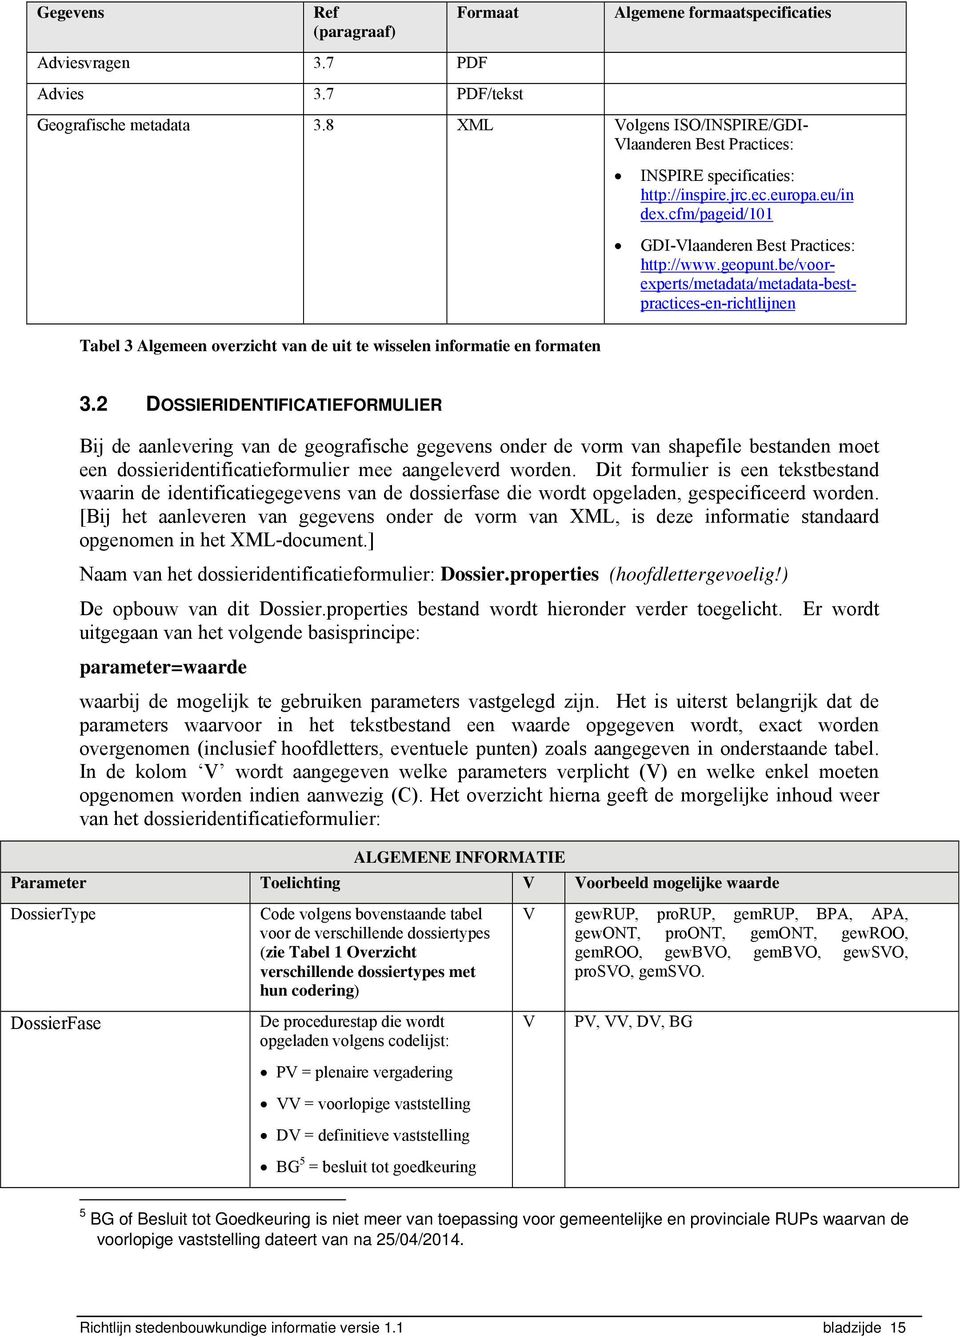 cfm/pageid/101 GDI-Vlaanderen Best Practices: http://www.geopunt.be/voorexperts/metadata/metadata-bestpractices-en-richtlijnen 3.